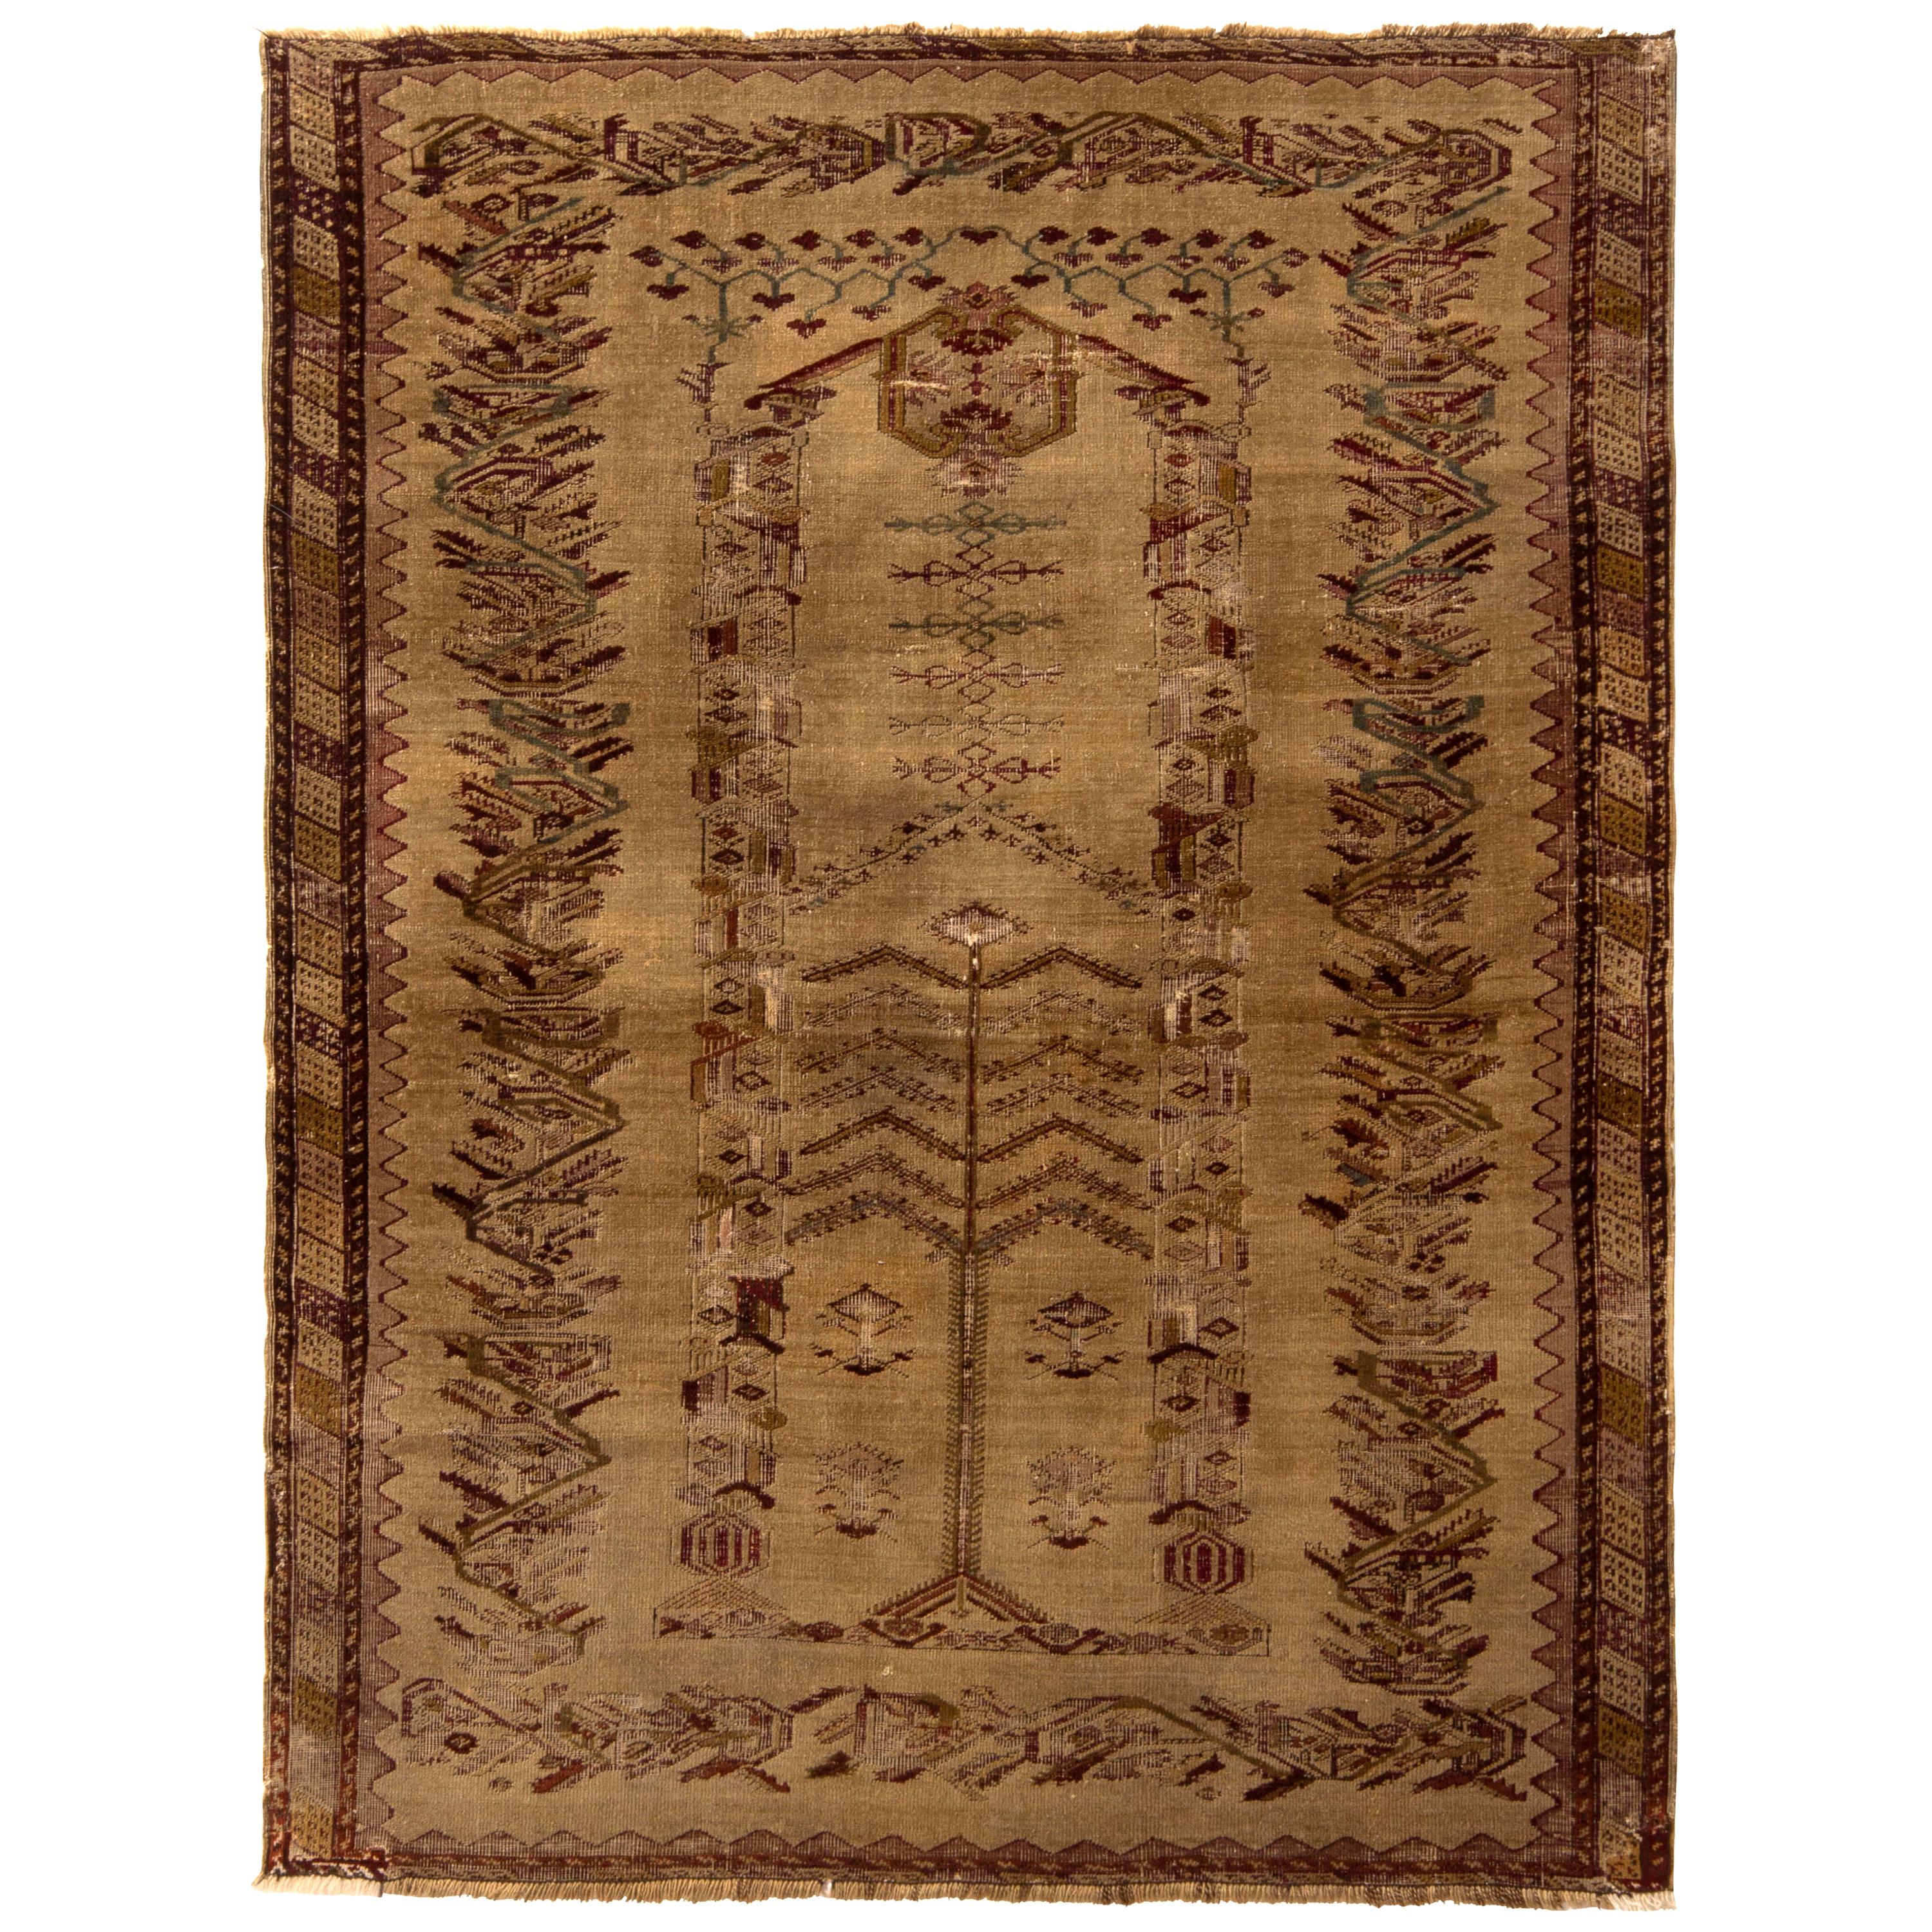 Handgeknüpfter antiker Ghiordes-Teppich in Beige und Braun mit geometrischem Muster von Teppich & Kelim